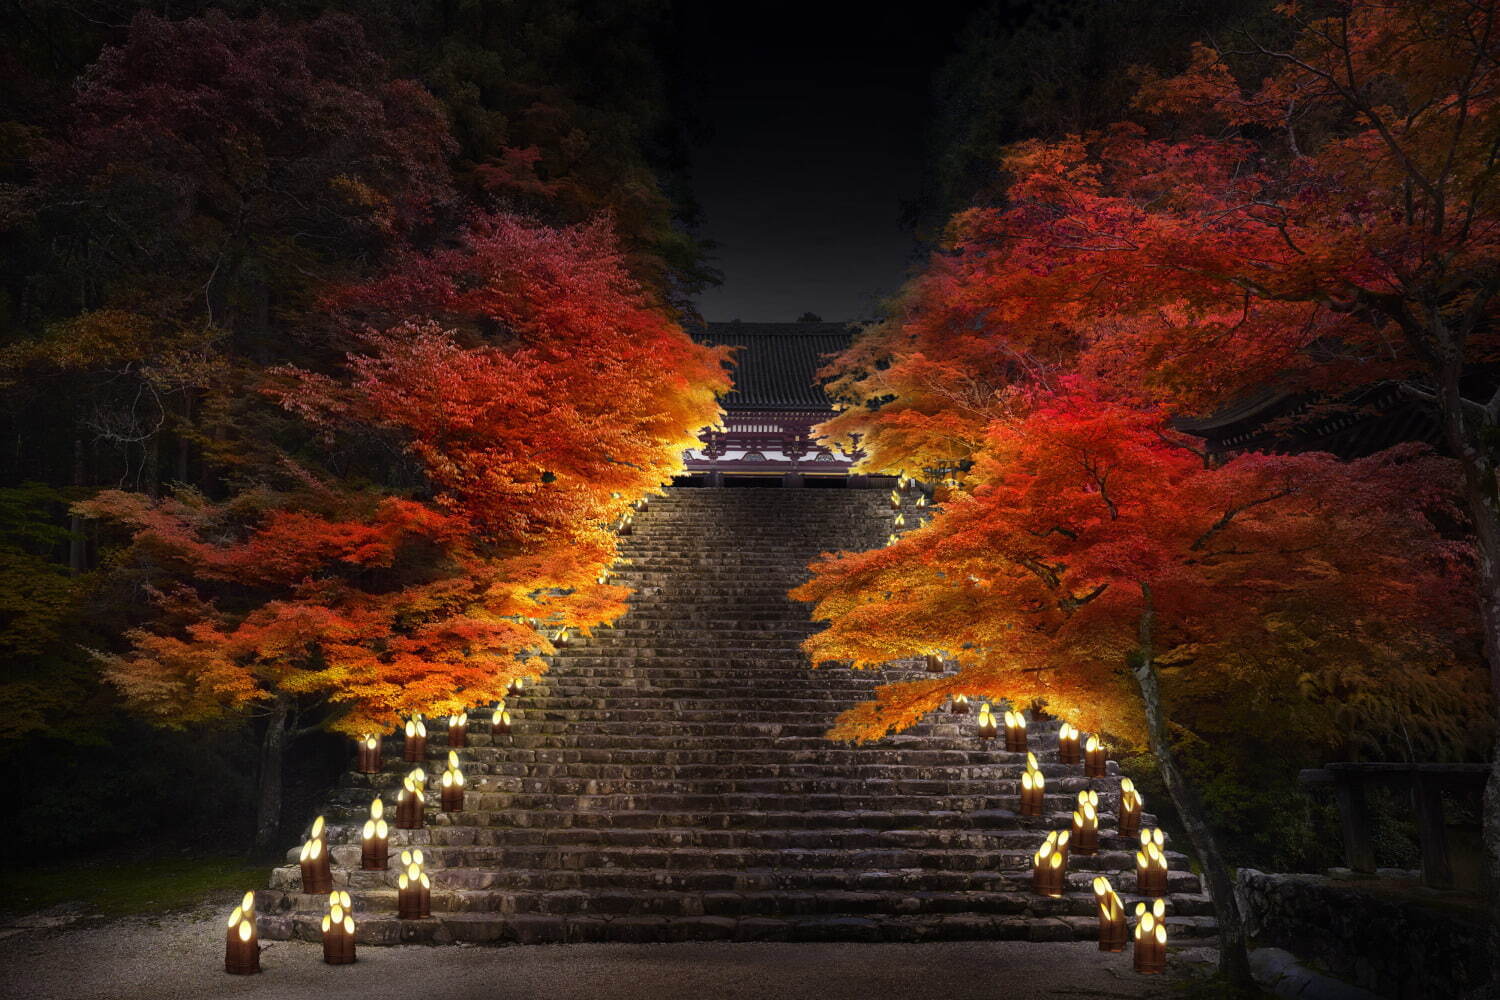 秋イベント ひかりの京都 紅葉ライトアップ 竹灯籠など 夕暮れ時 夜間に社寺を特別拝観 ファッションプレス